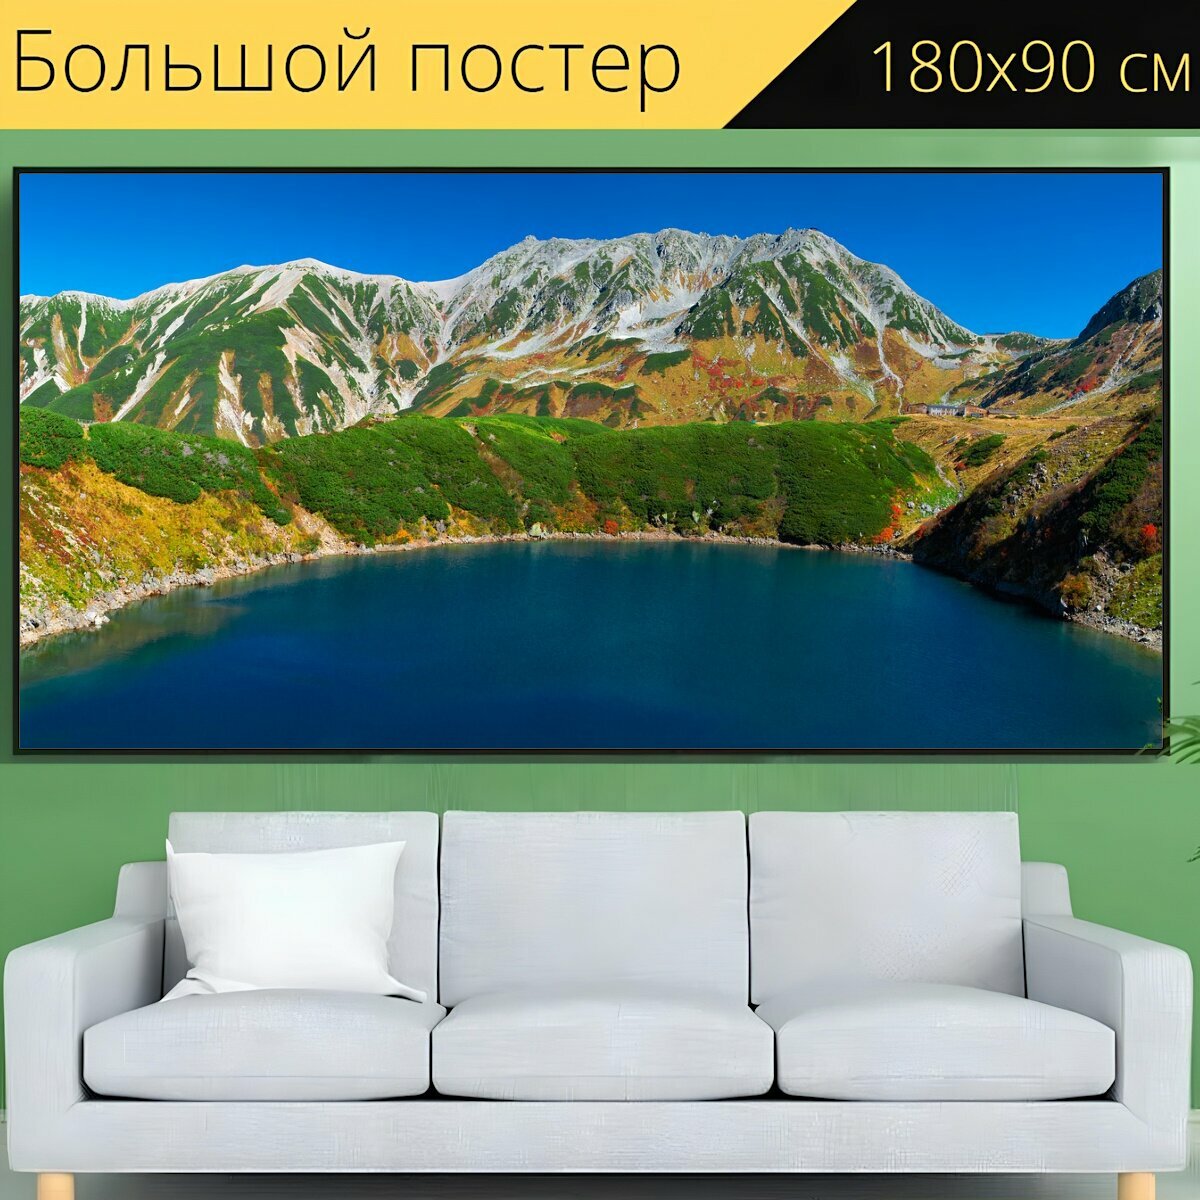 Большой постер "Вулканическое озеро, горный пейзаж, осень" 180 x 90 см. для интерьера